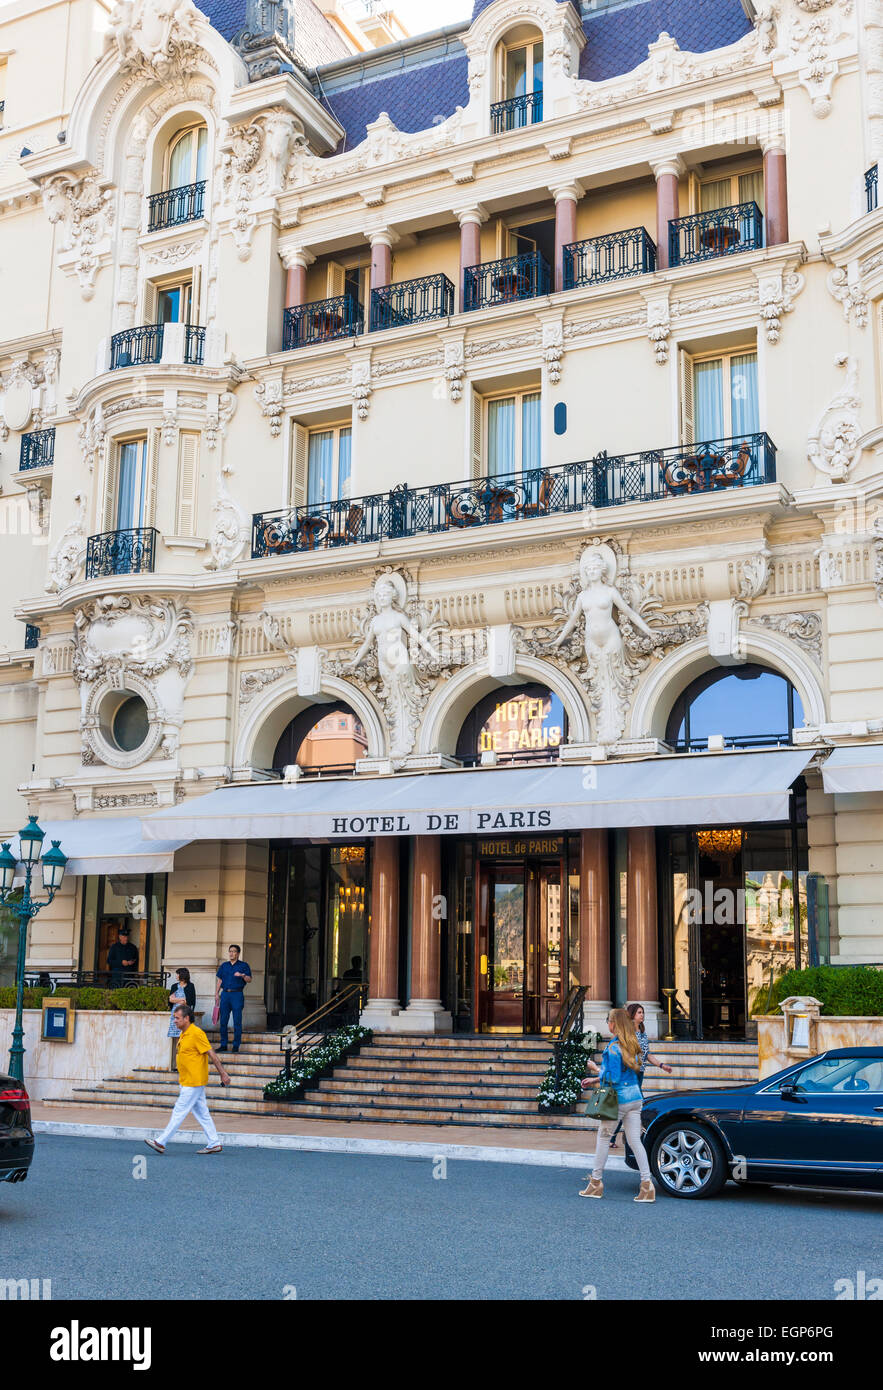 MONTE CARLO, MONACO - OCTOBER 3, 2014: Entrance to Hotel de Paris in Monte Carlo, Monaco Stock Photo